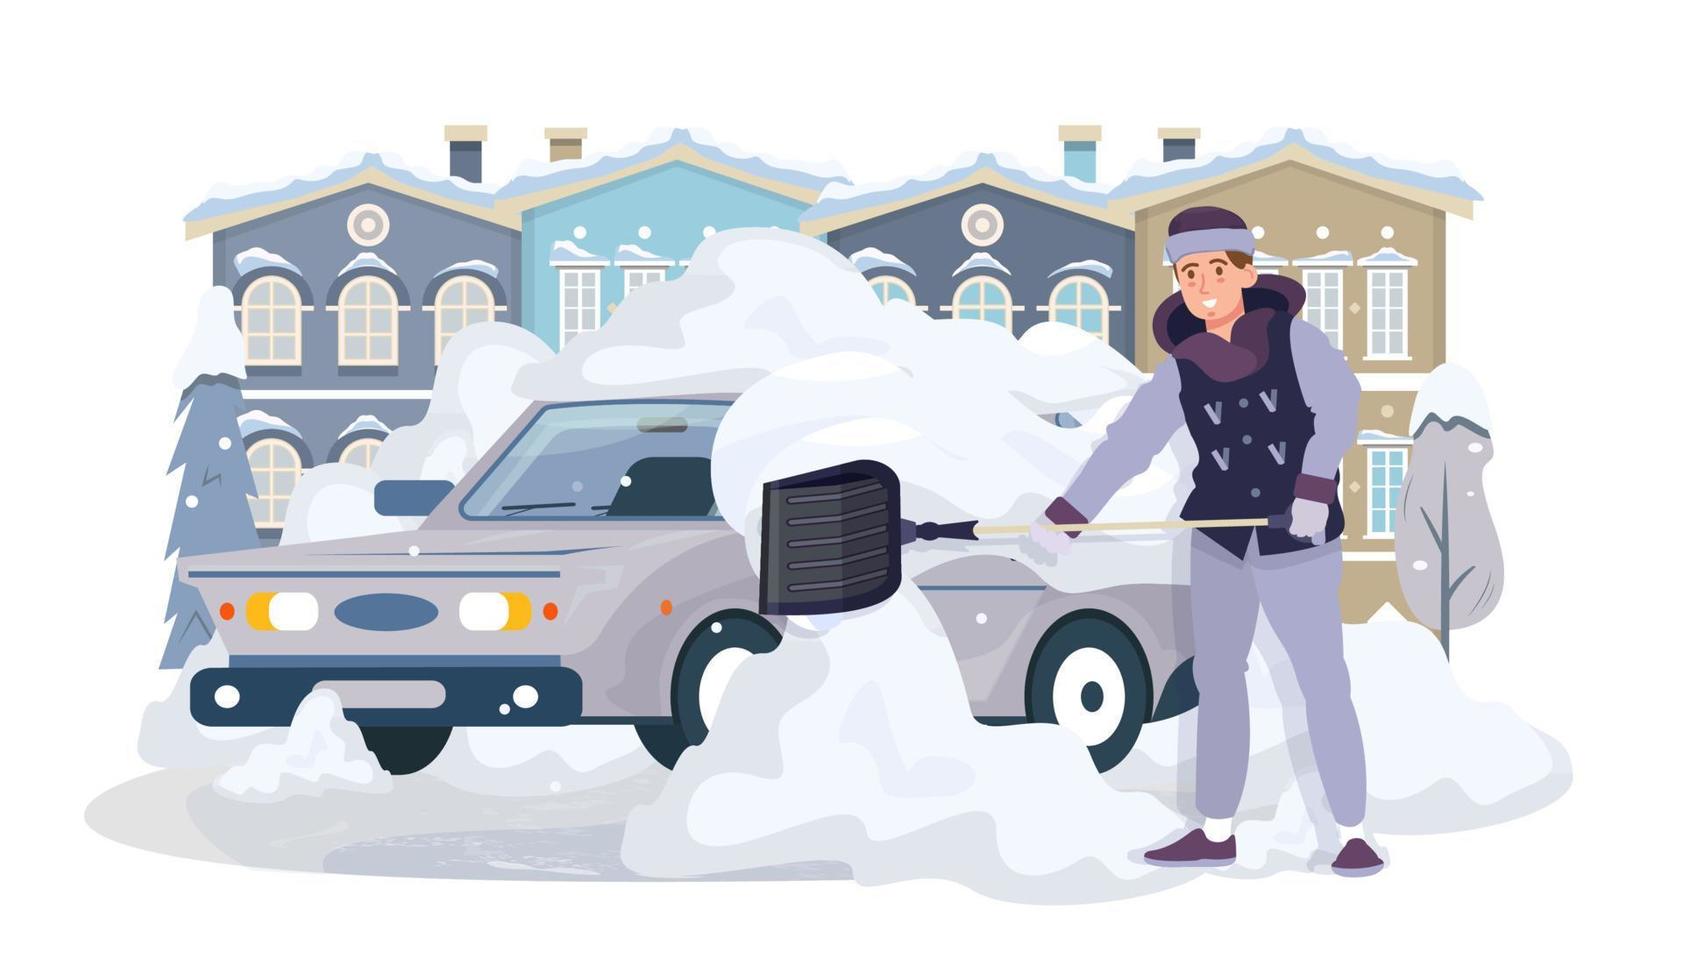 Mann reinigt sein Auto mit einer Schaufel vom Schnee. Auto mit Schnee bedeckt. Schneesturm im Winter. verschneite Straßen. Schneeräumung. flache vektorillustration vektor